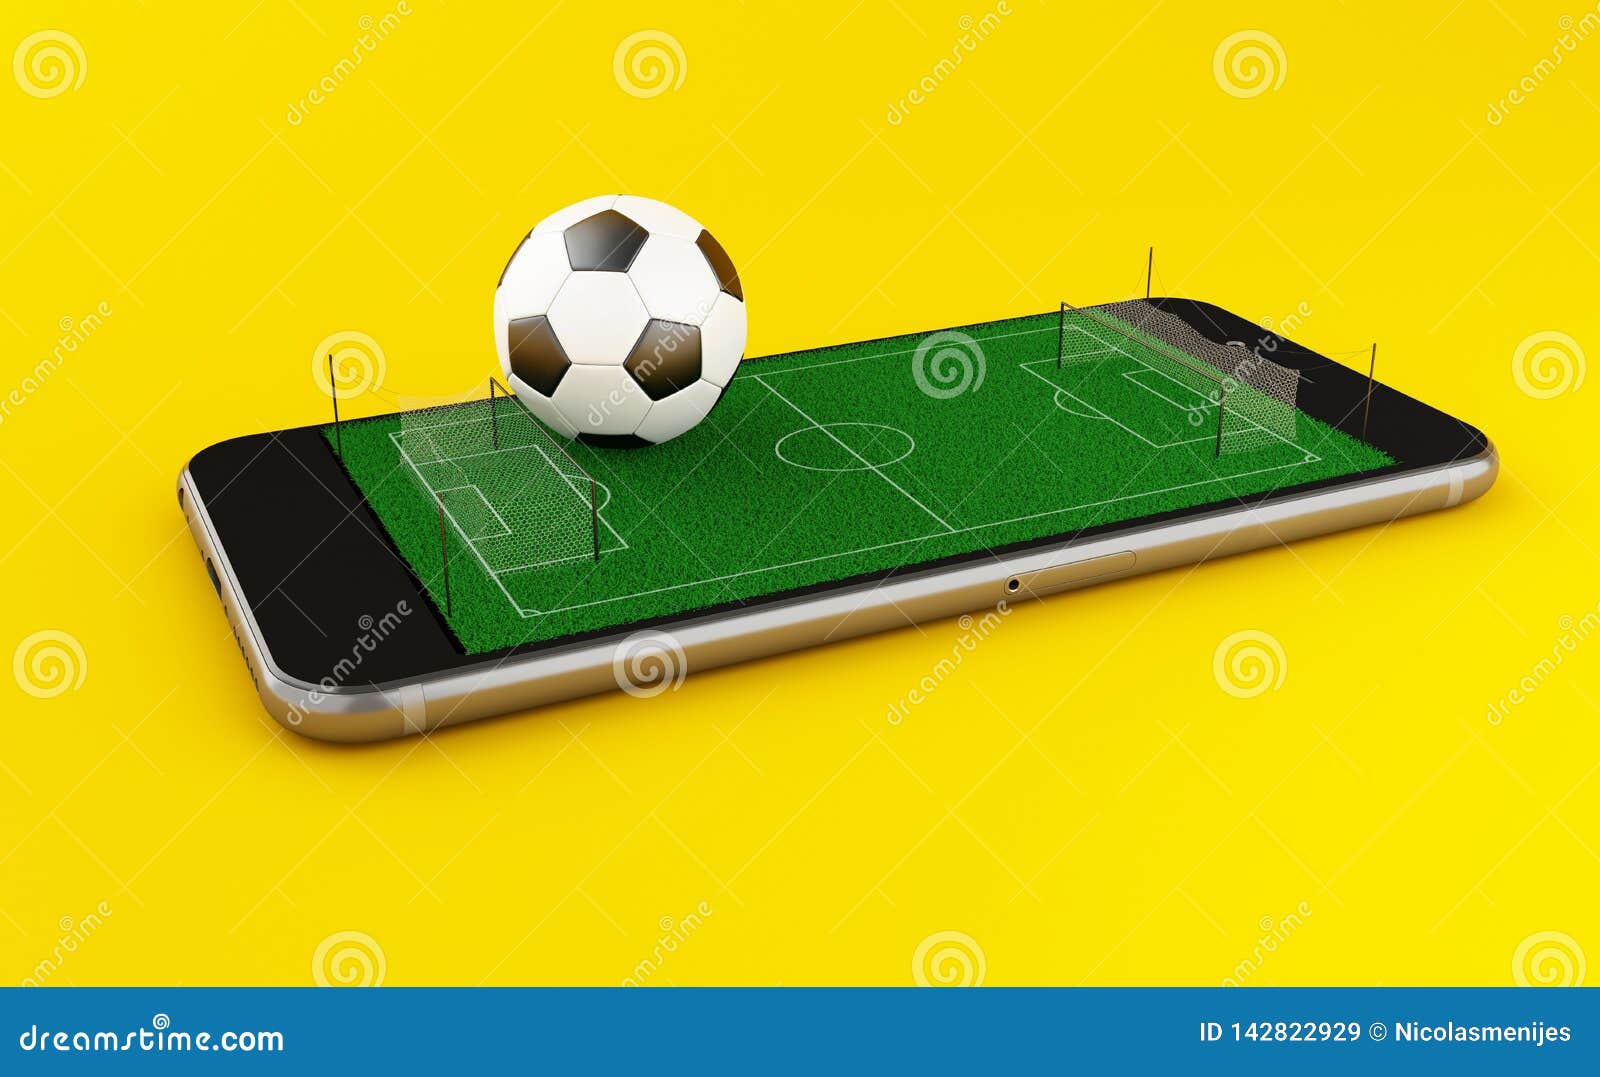 Telefone Celular Em Fundo Amarelo Com Campo De Futebol Na Tela 3d